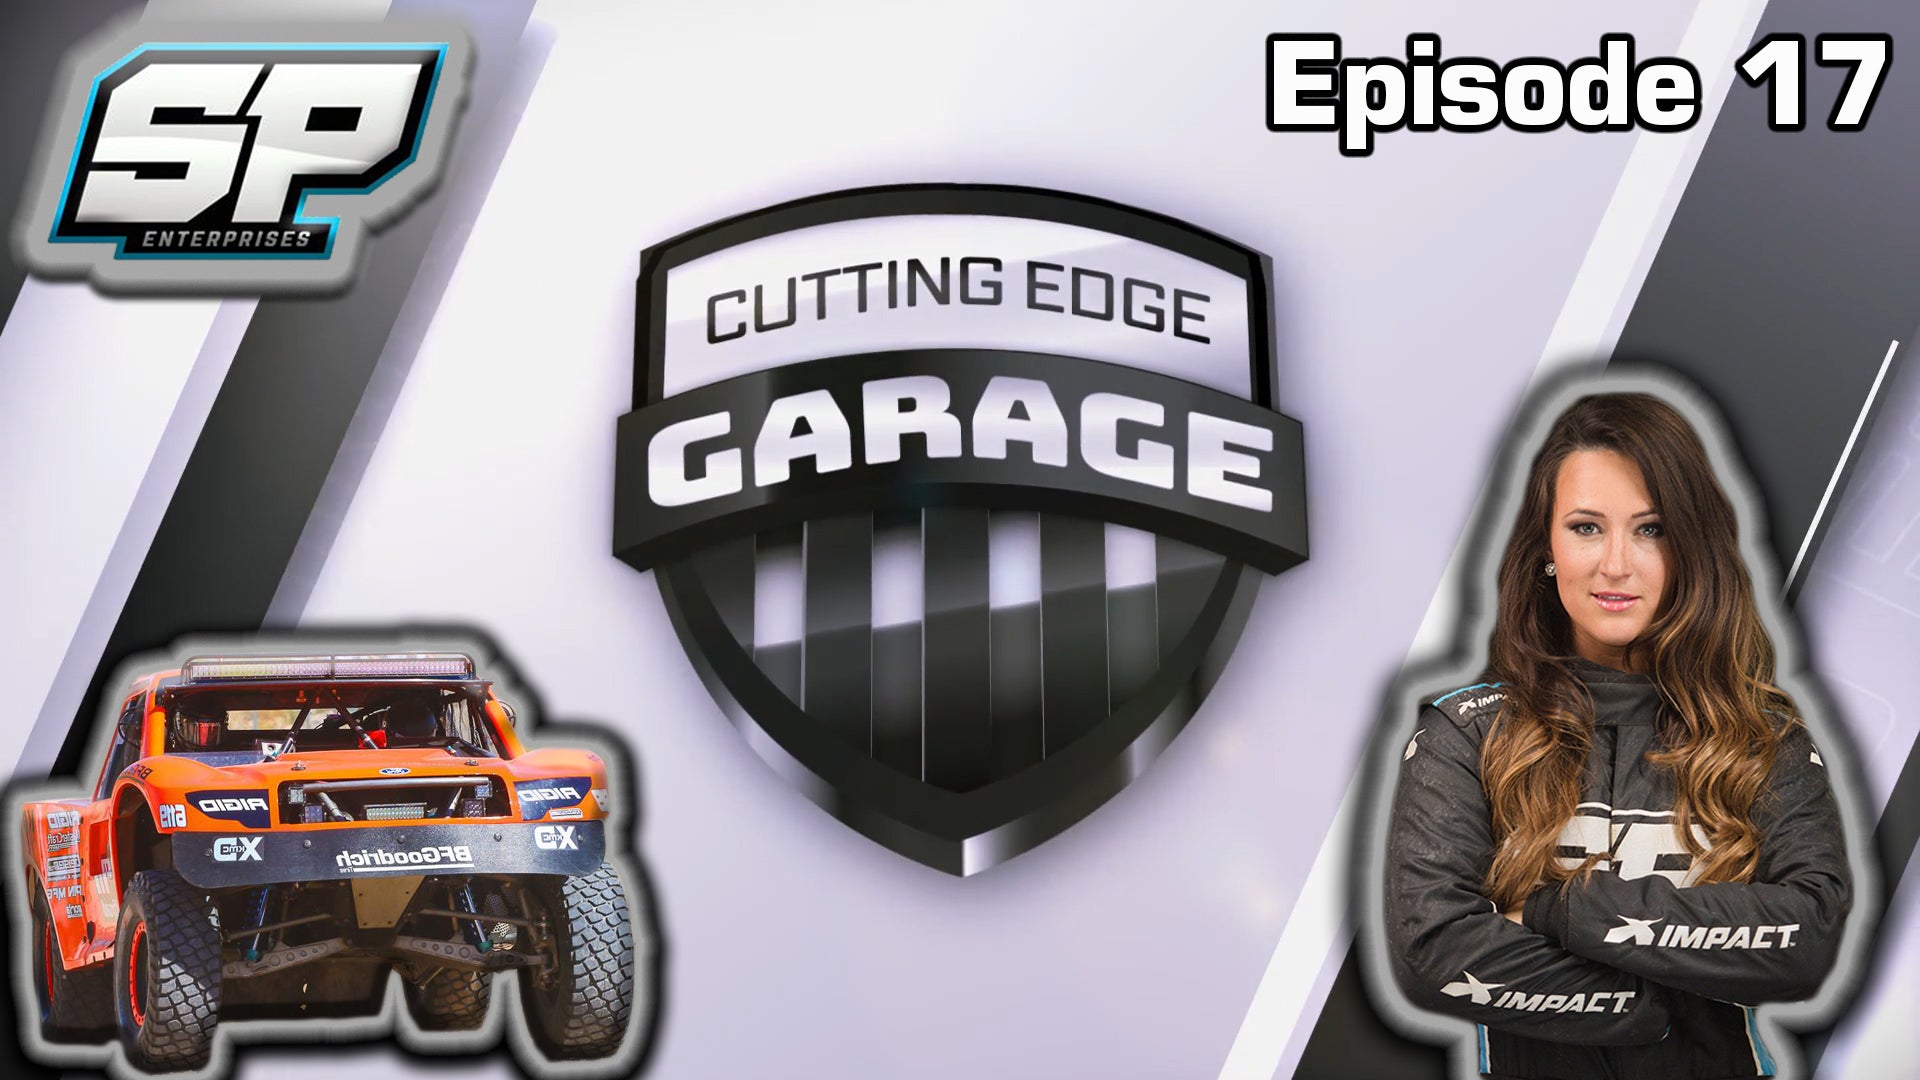 Cutting Edge Garage - Episode 17